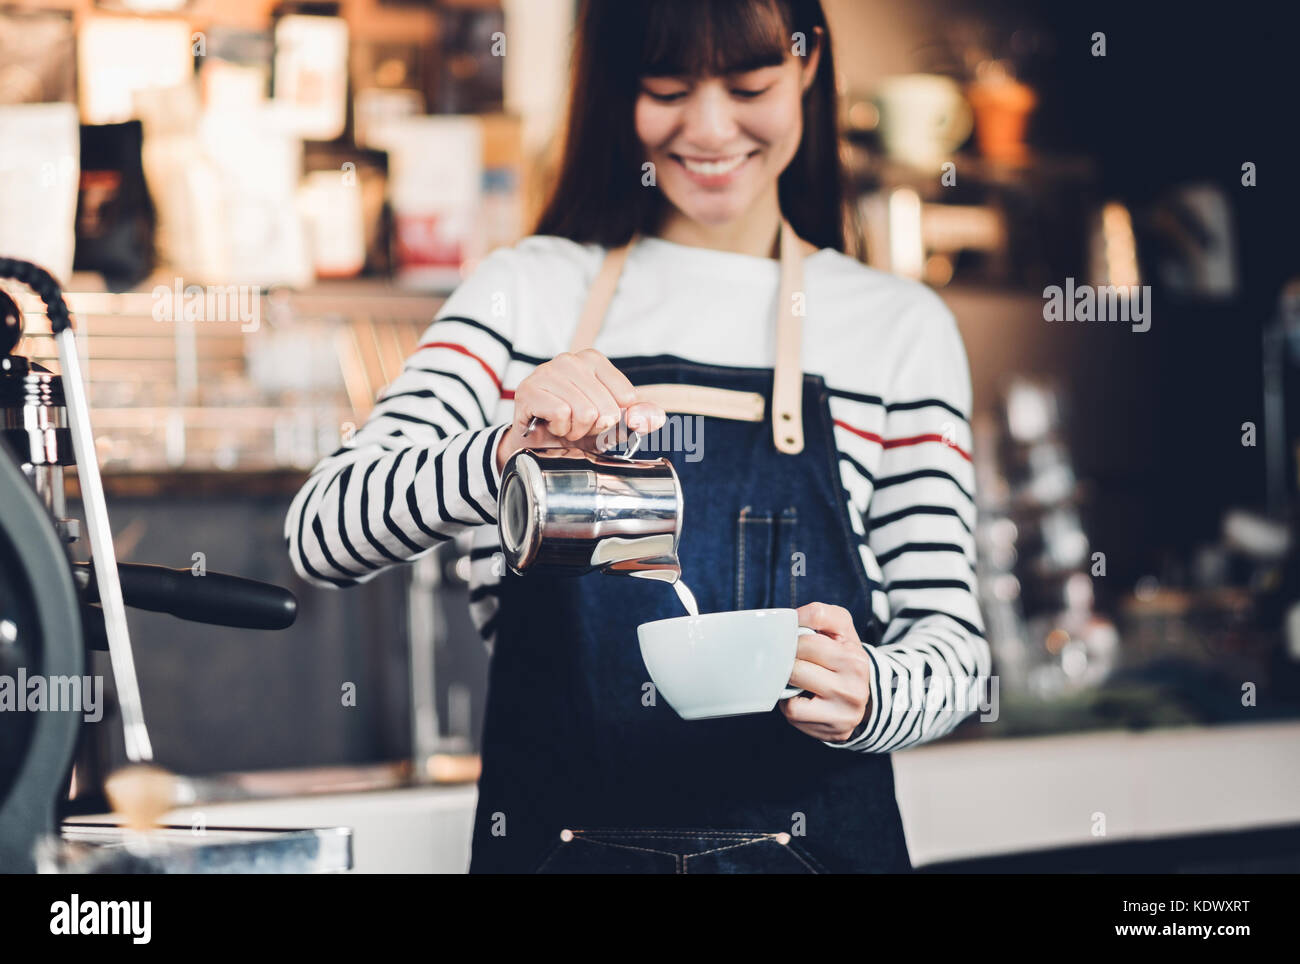 Asien Frau barista gießen Sie Milch in die heiße Tasse Kaffee an der Bar vor der Maschine im Cafe Restaurant, Essen Geschäftsinhaber Konzept Stockfoto